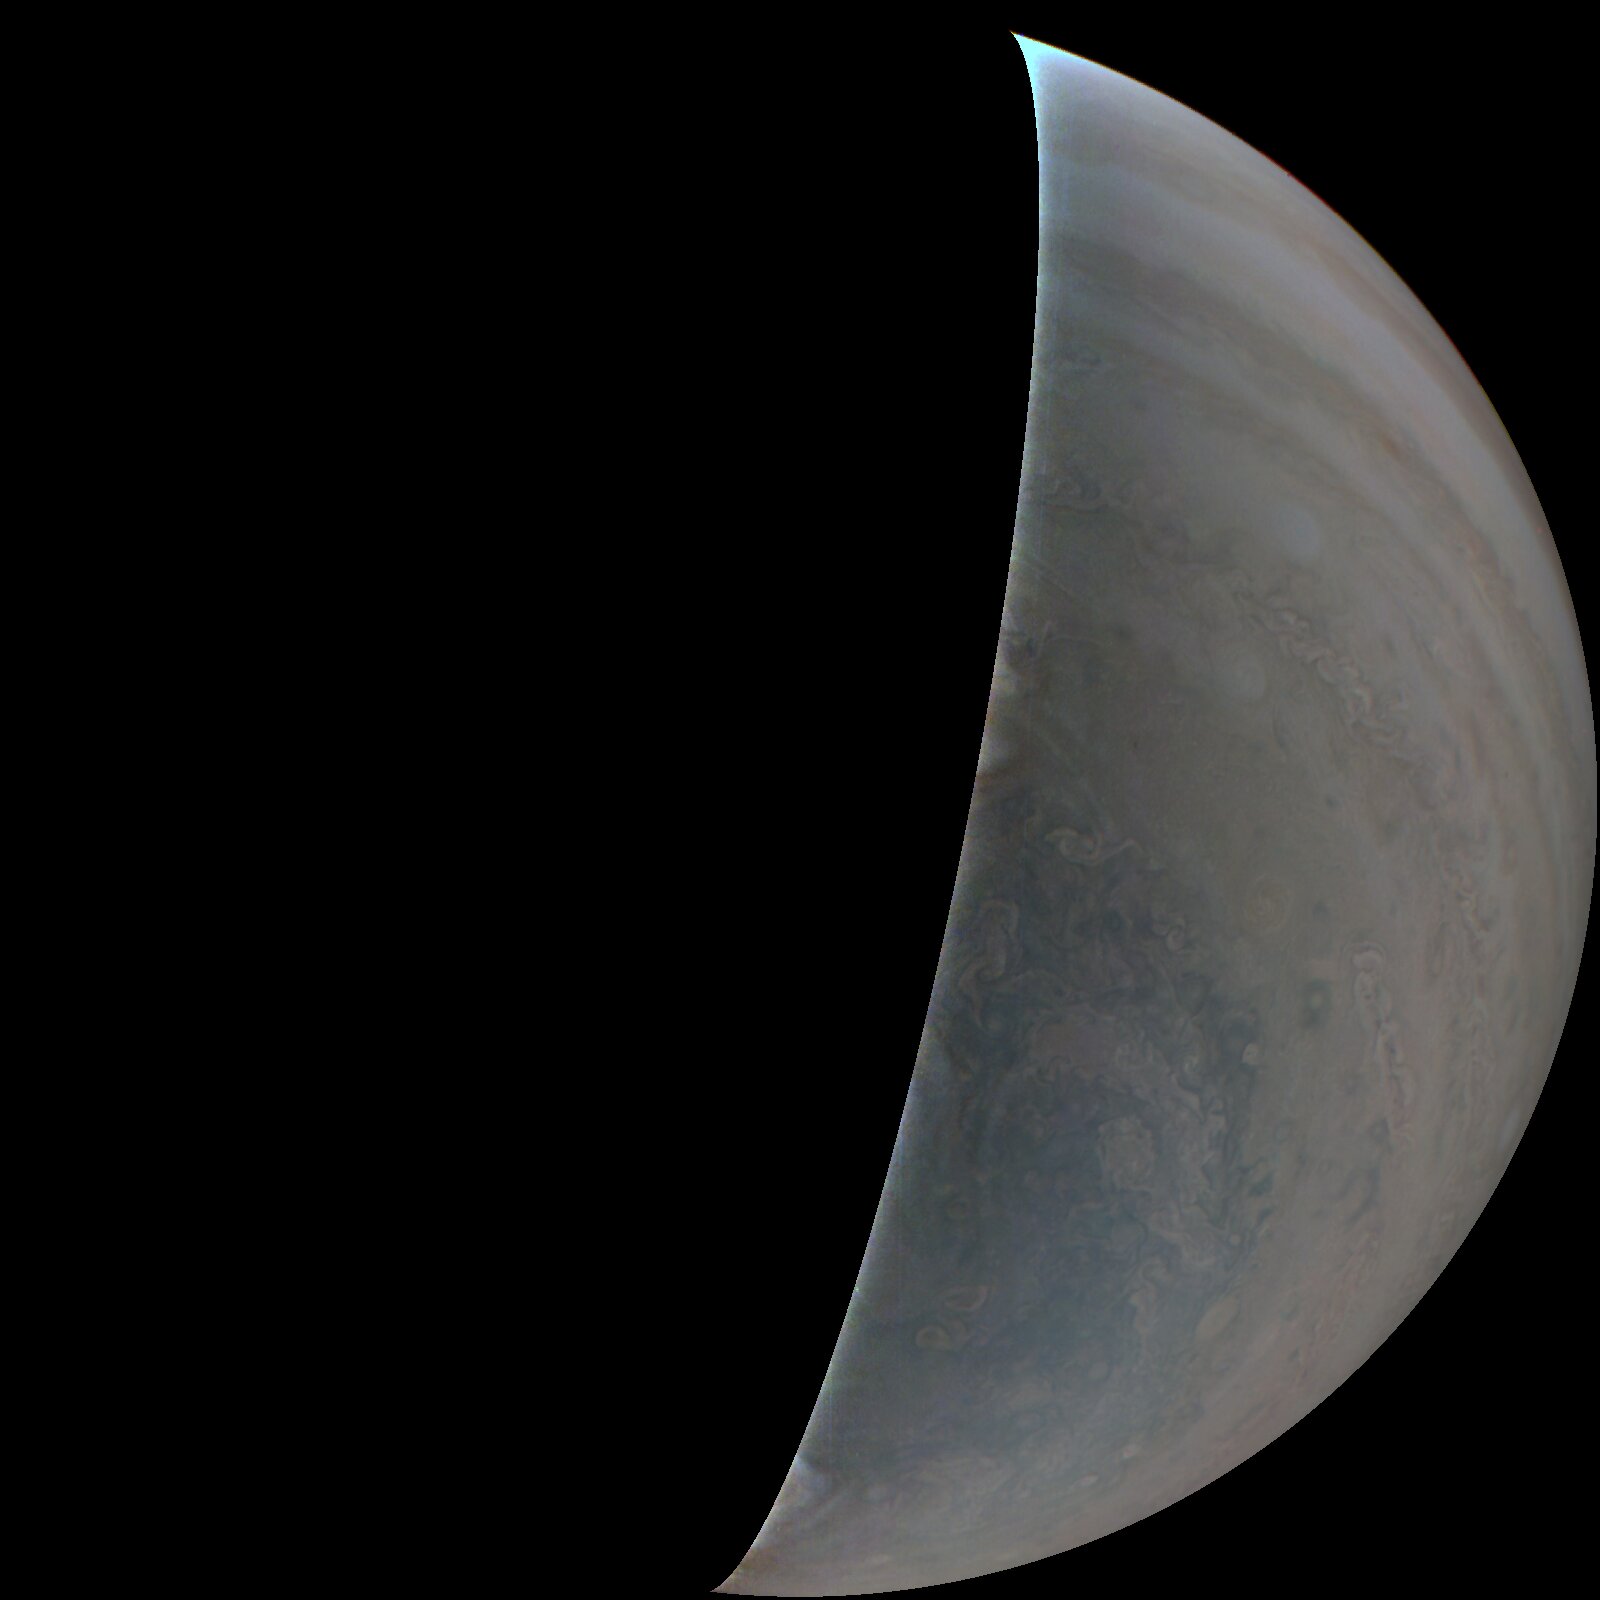 El equipo Juno de la NASA evalúa la cámara después del sobrevuelo número 48 de Júpiter